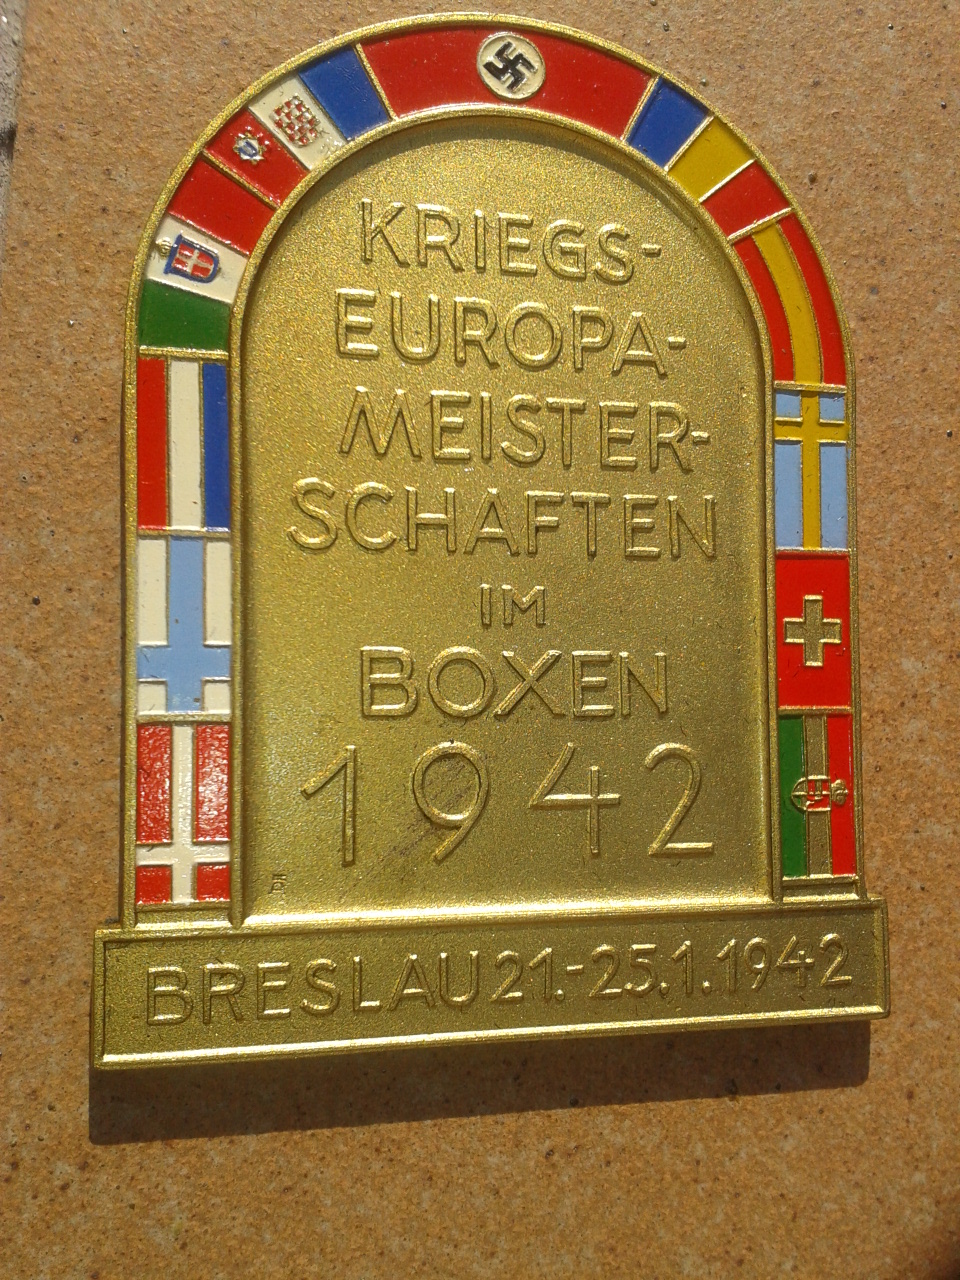 european amateur boxing championships